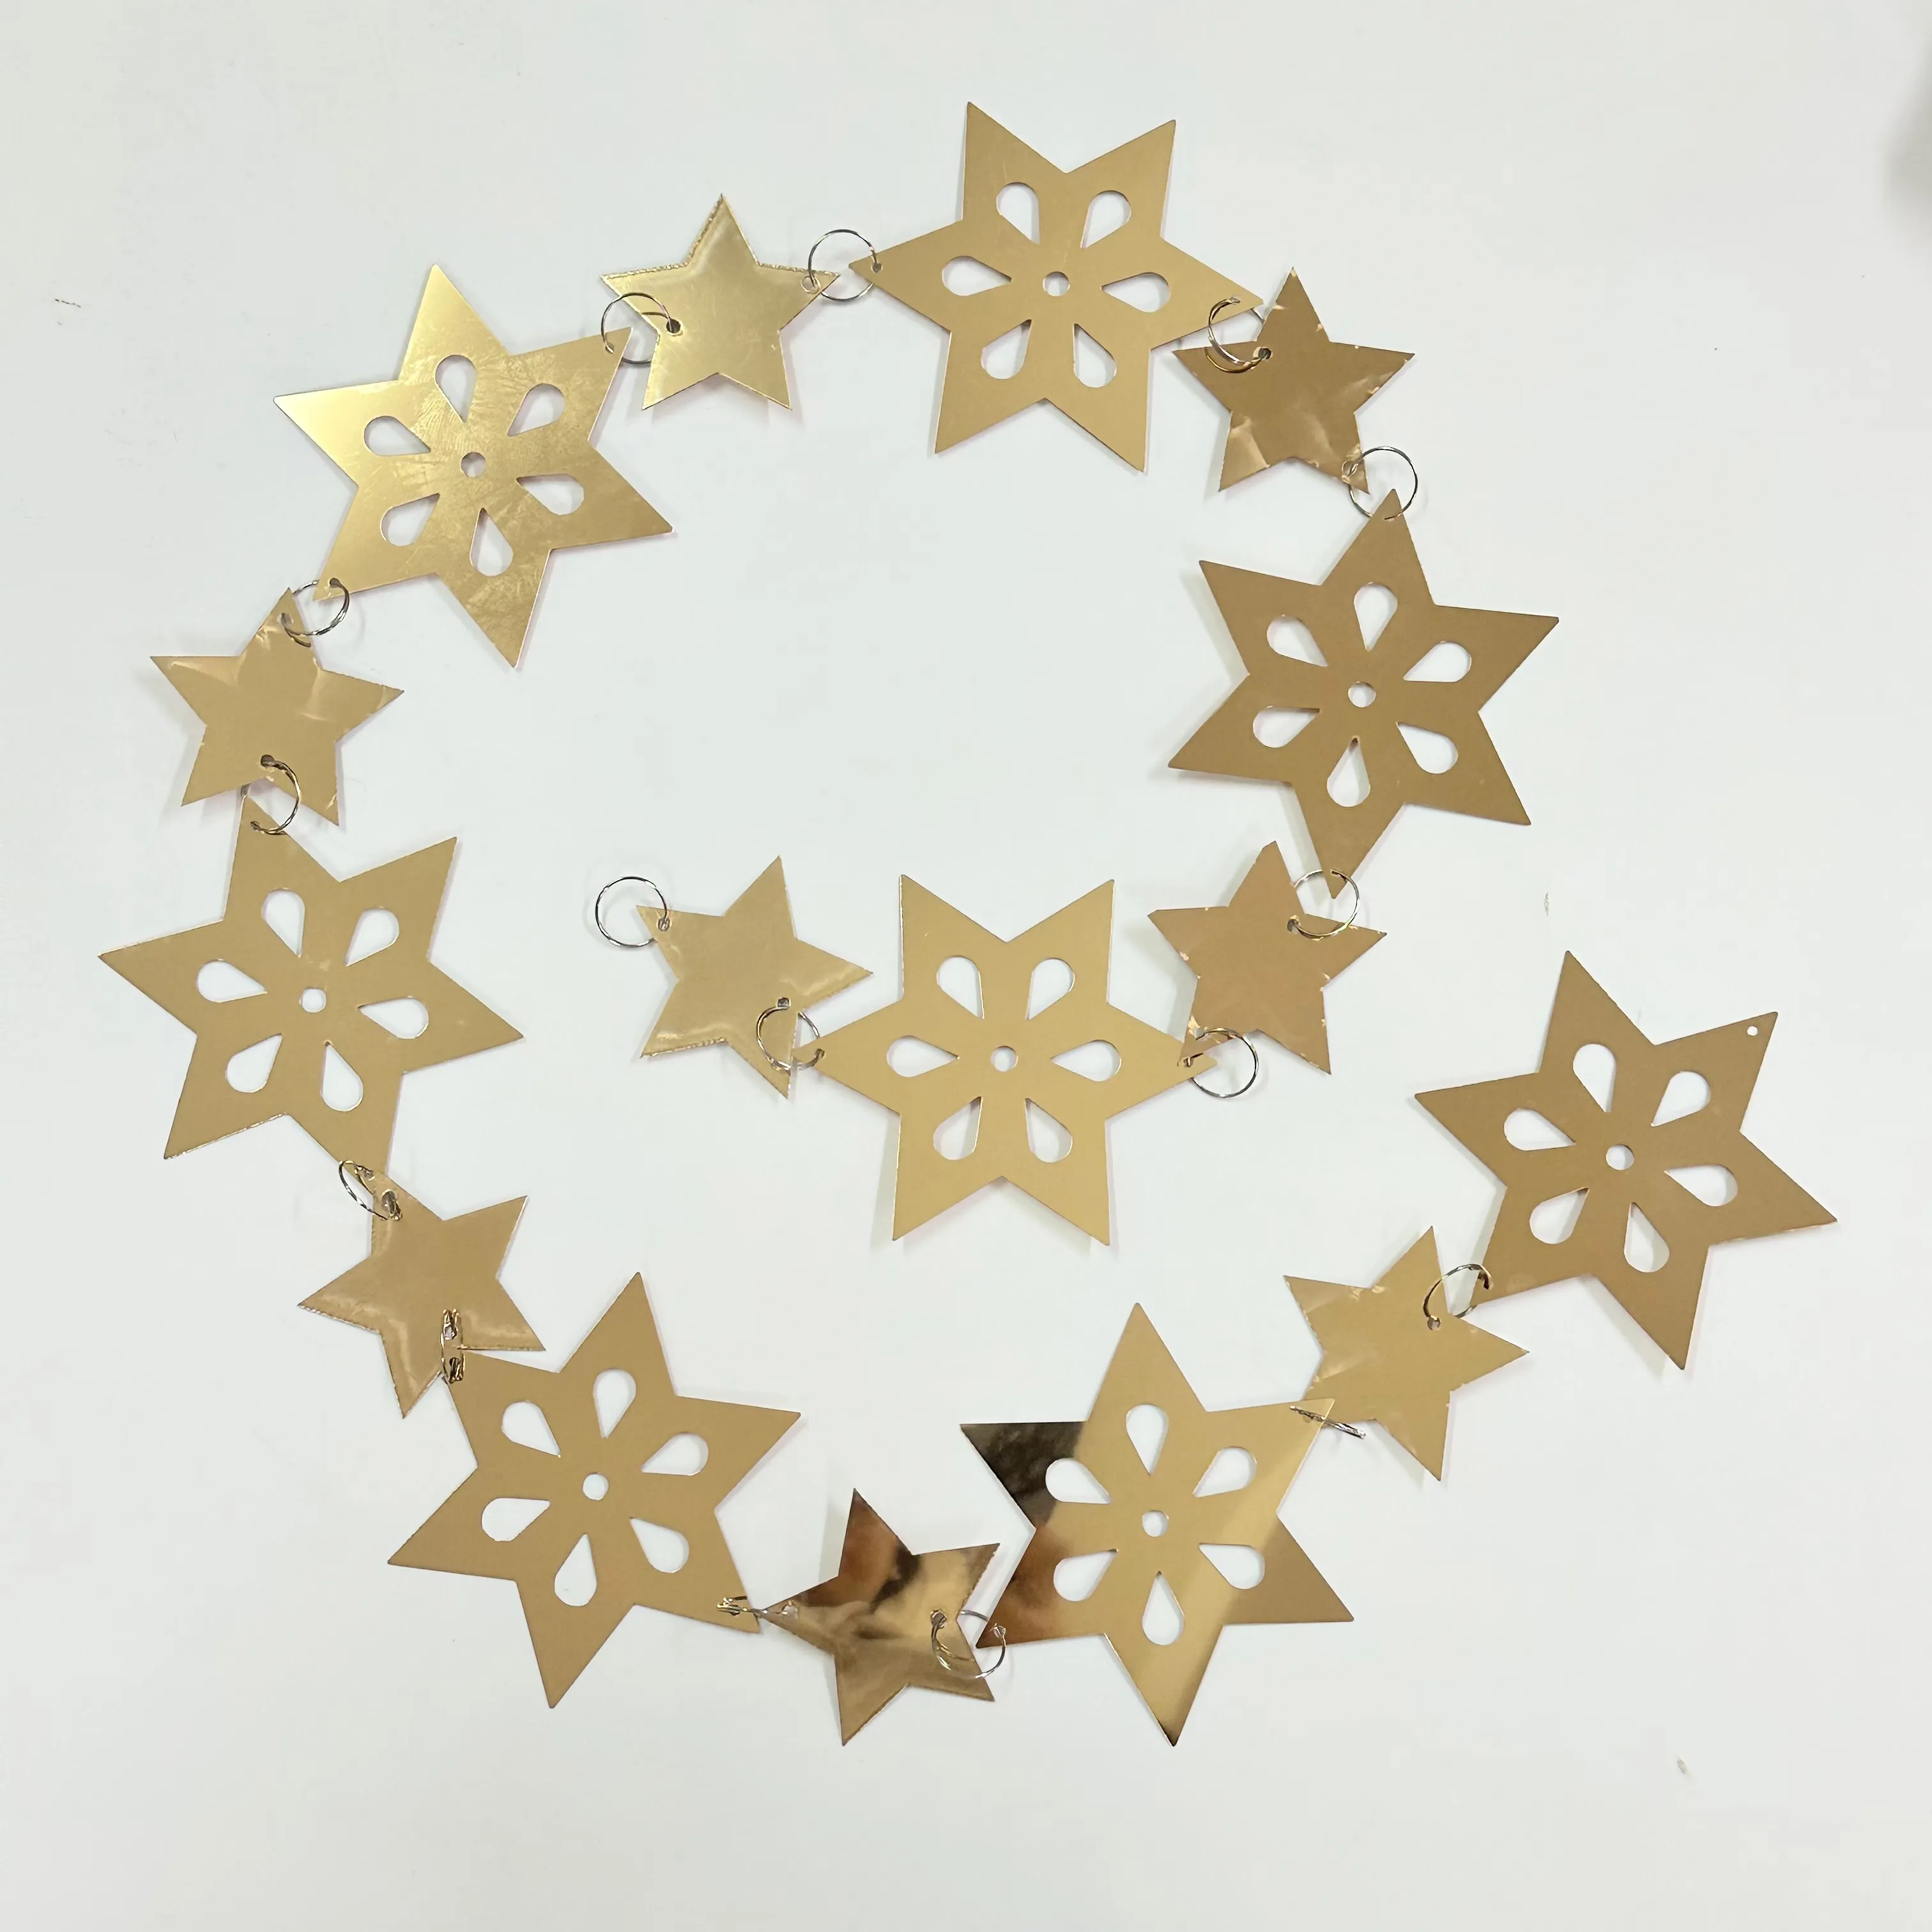 Spiegel Golden Stars Glitter Runde Hängende Kreis Girlande Hochzeits feier Hintergrund Szene Layout Weihnachts feier Dekorationen